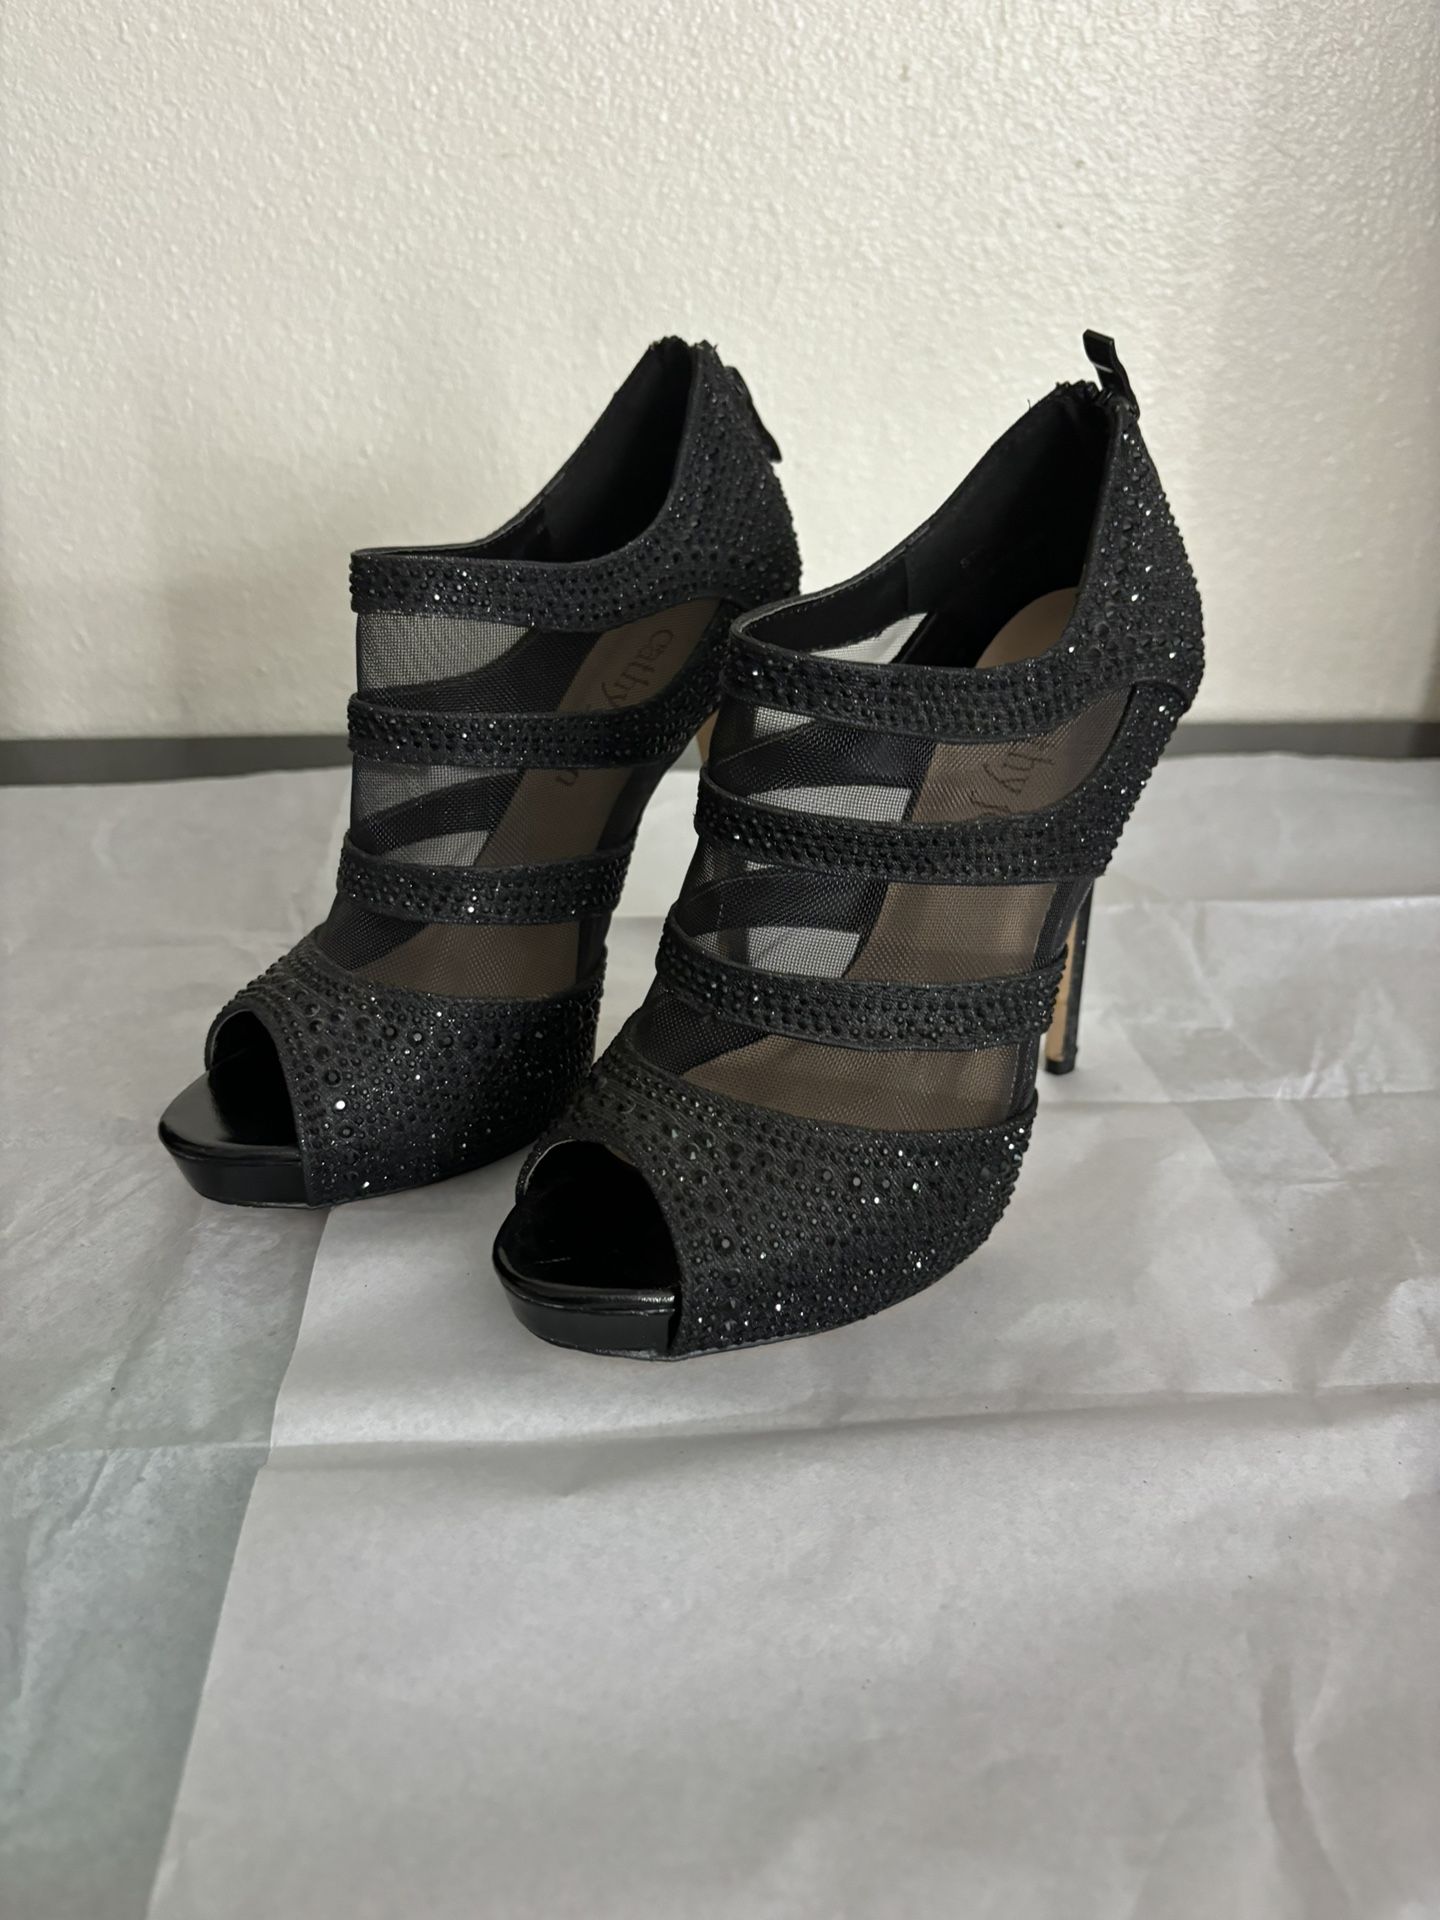 Black Sparkly Heels/booties